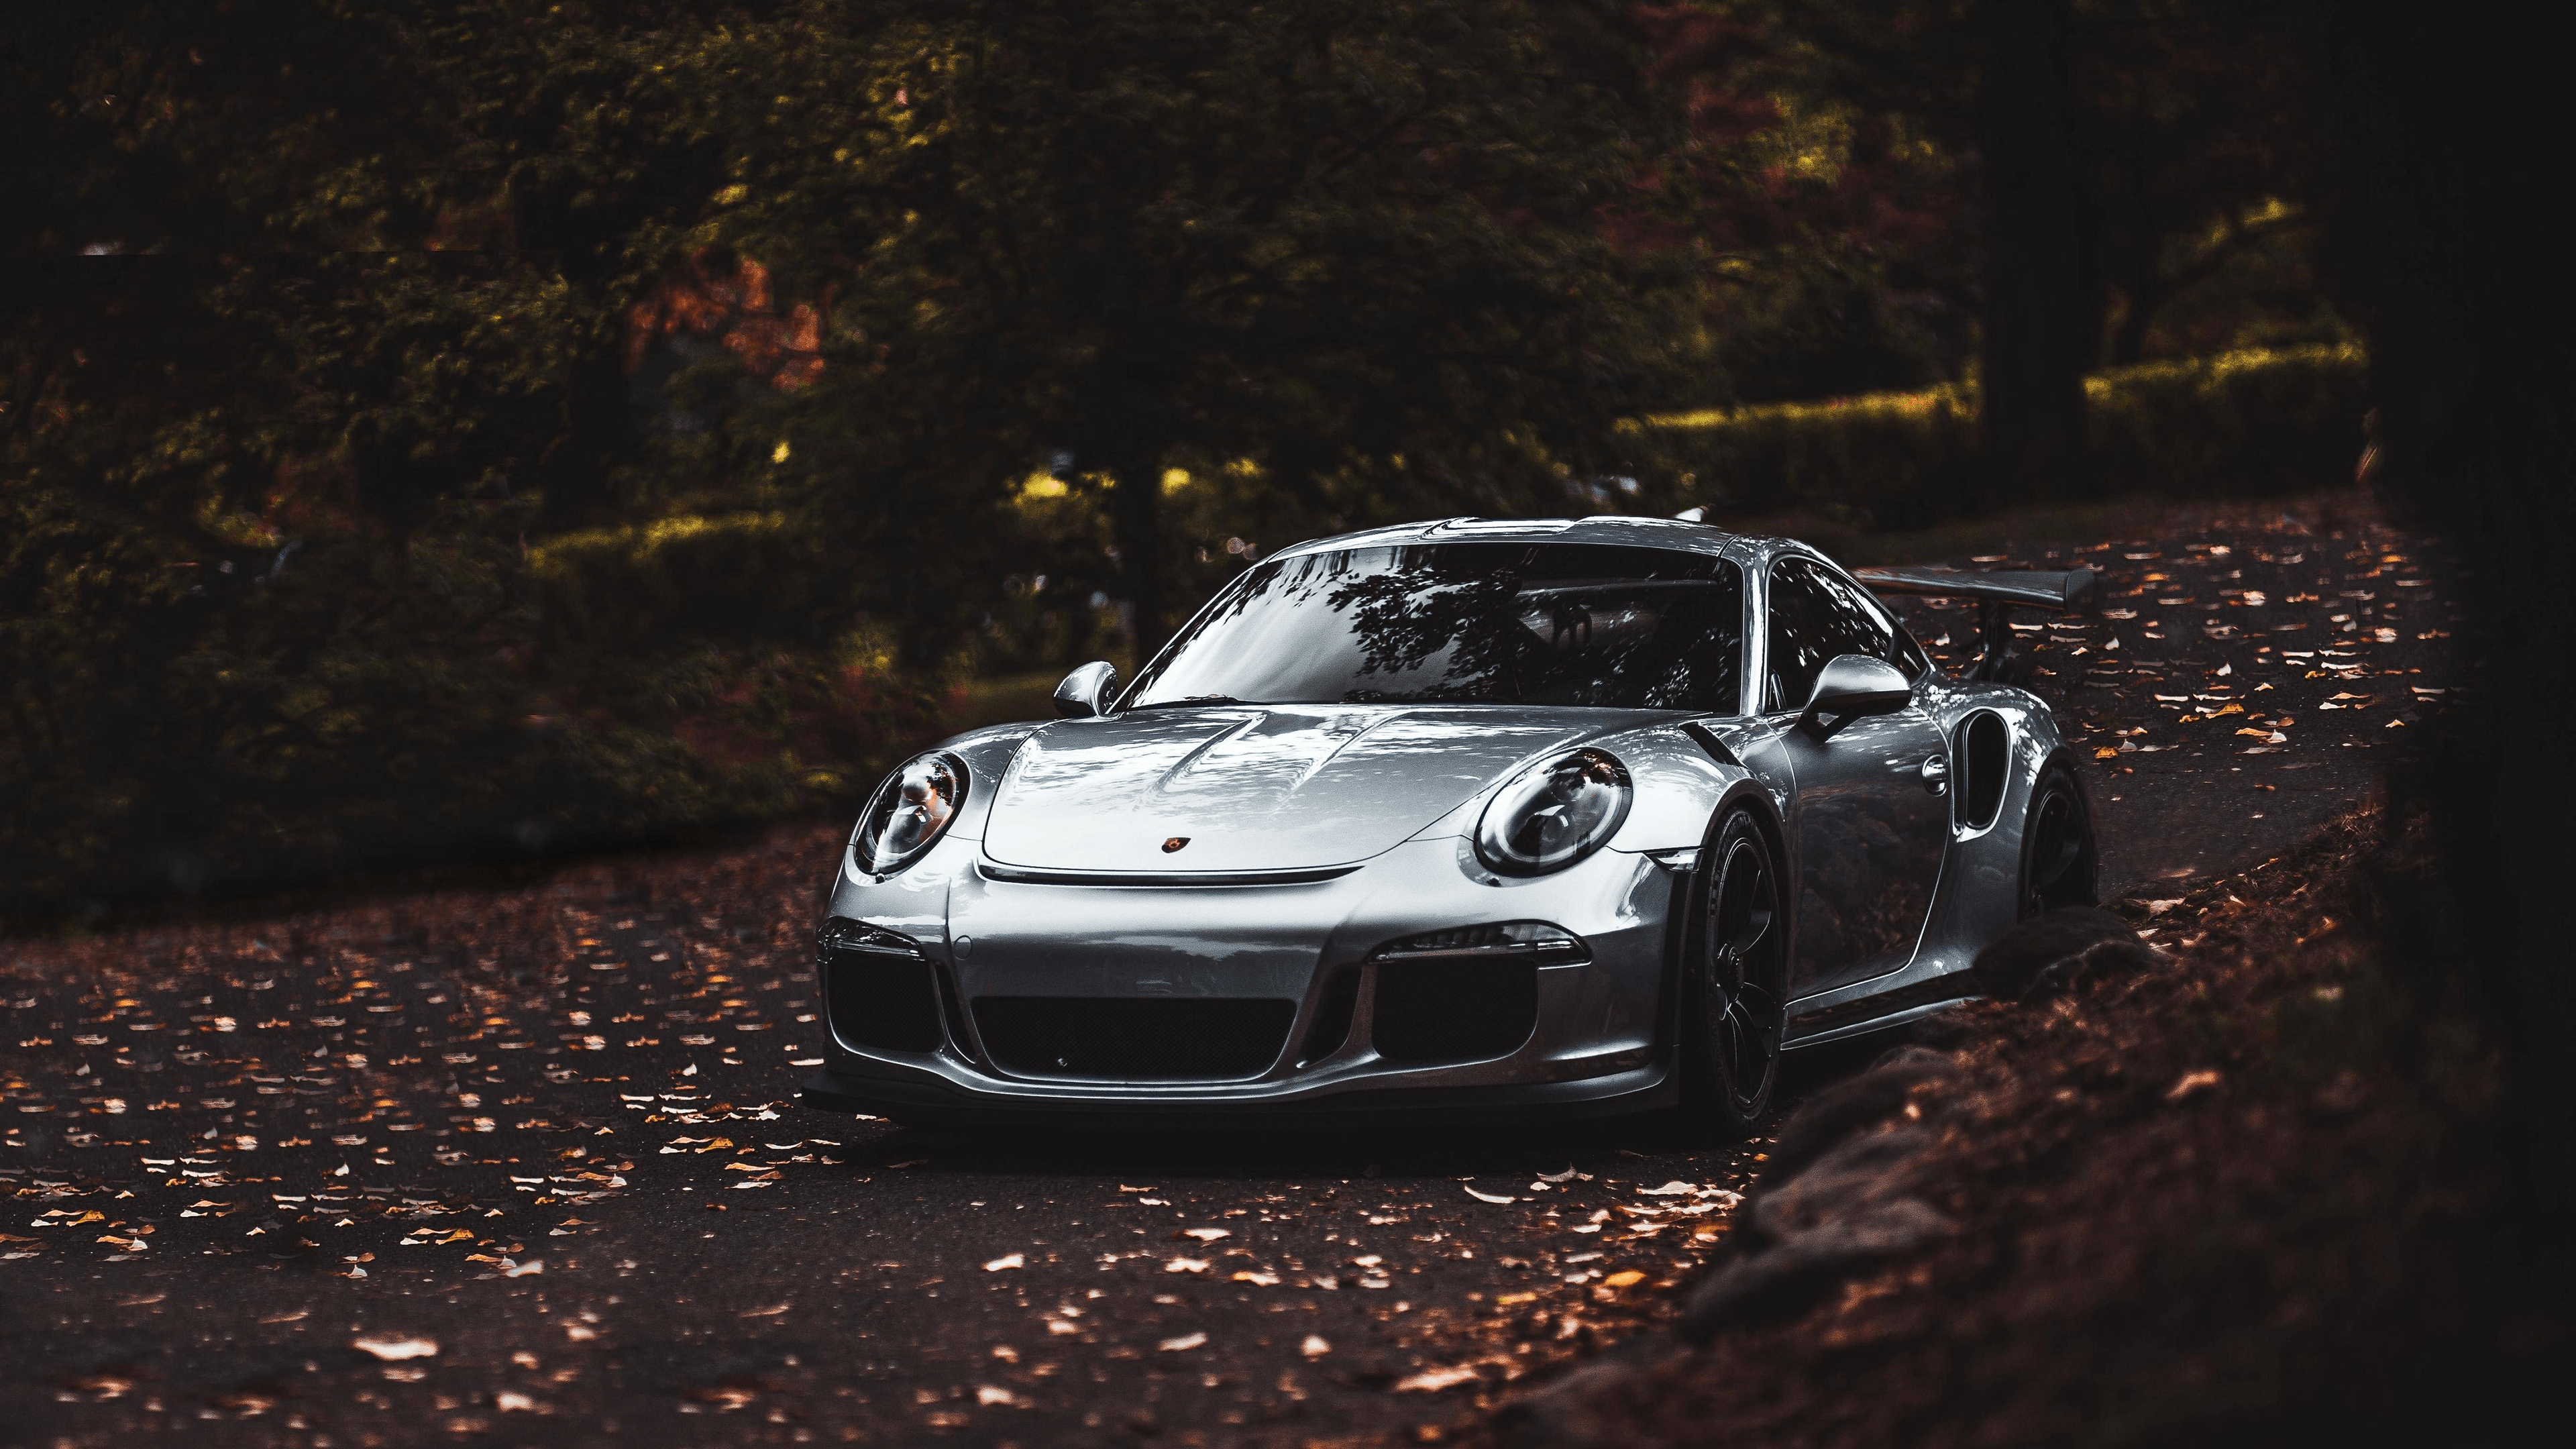 Porsche 911 Gt3 Rs 2018 Wallpapers - Wallpaper Cave